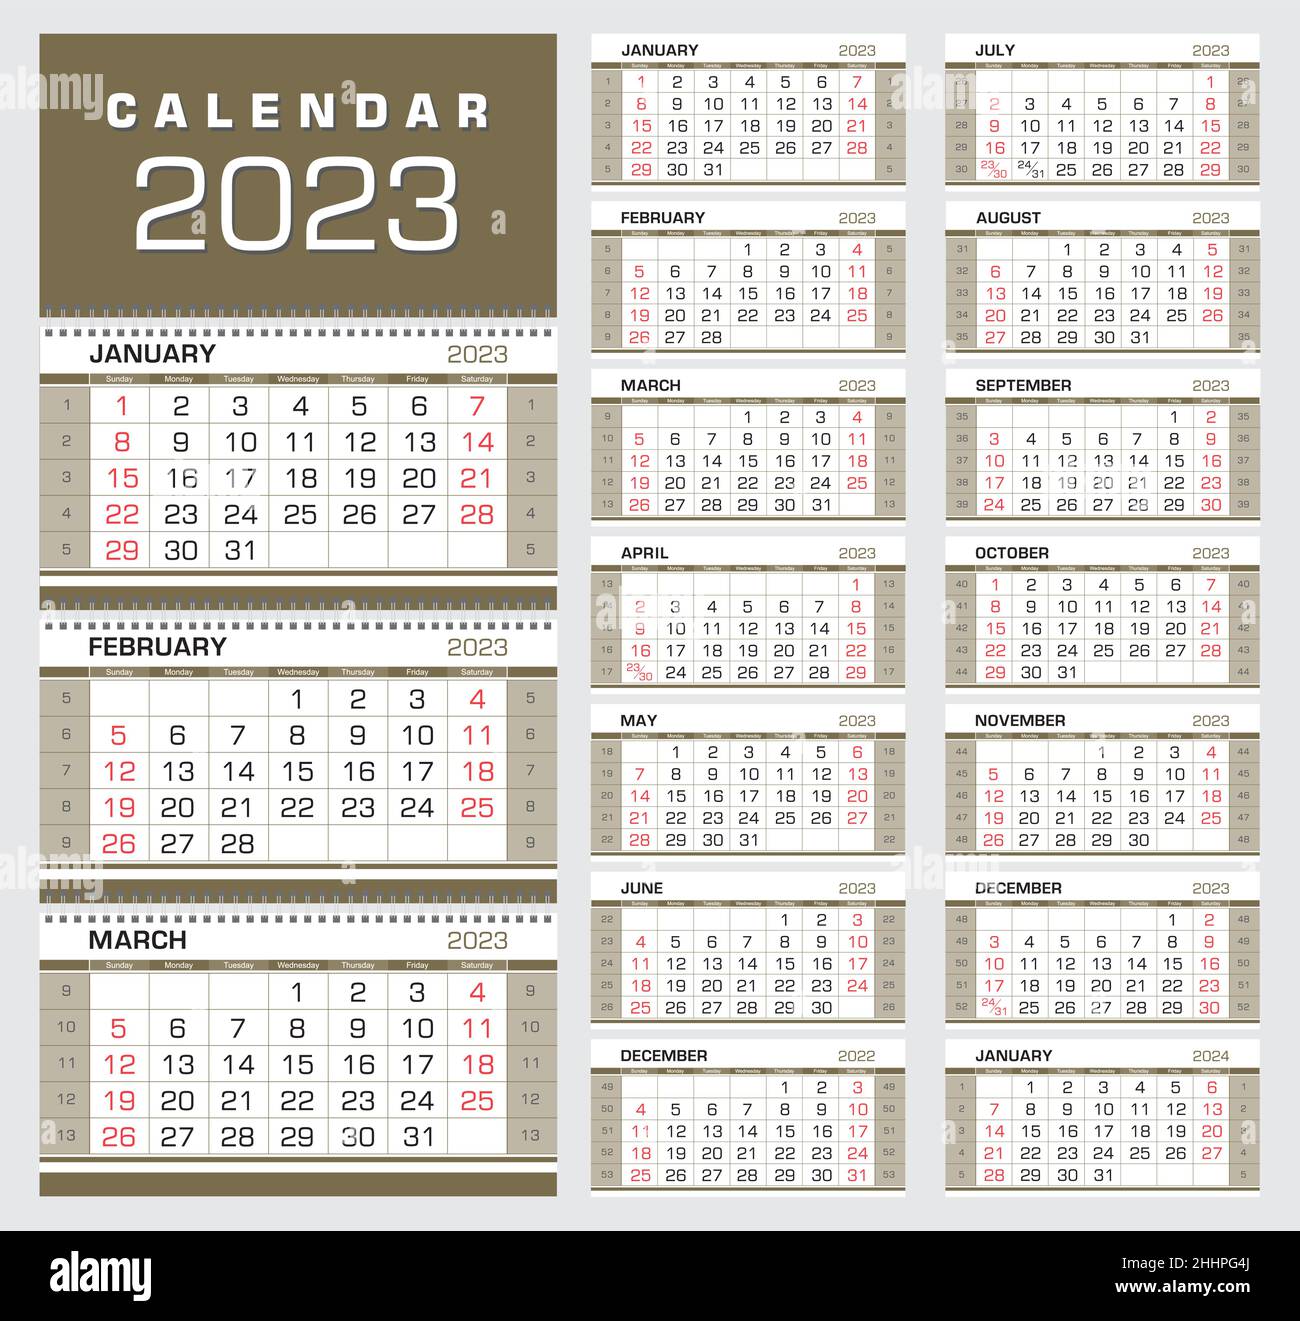 Calendrier 2023 Numeros De Semaine Banque De Photographies Et Dimages